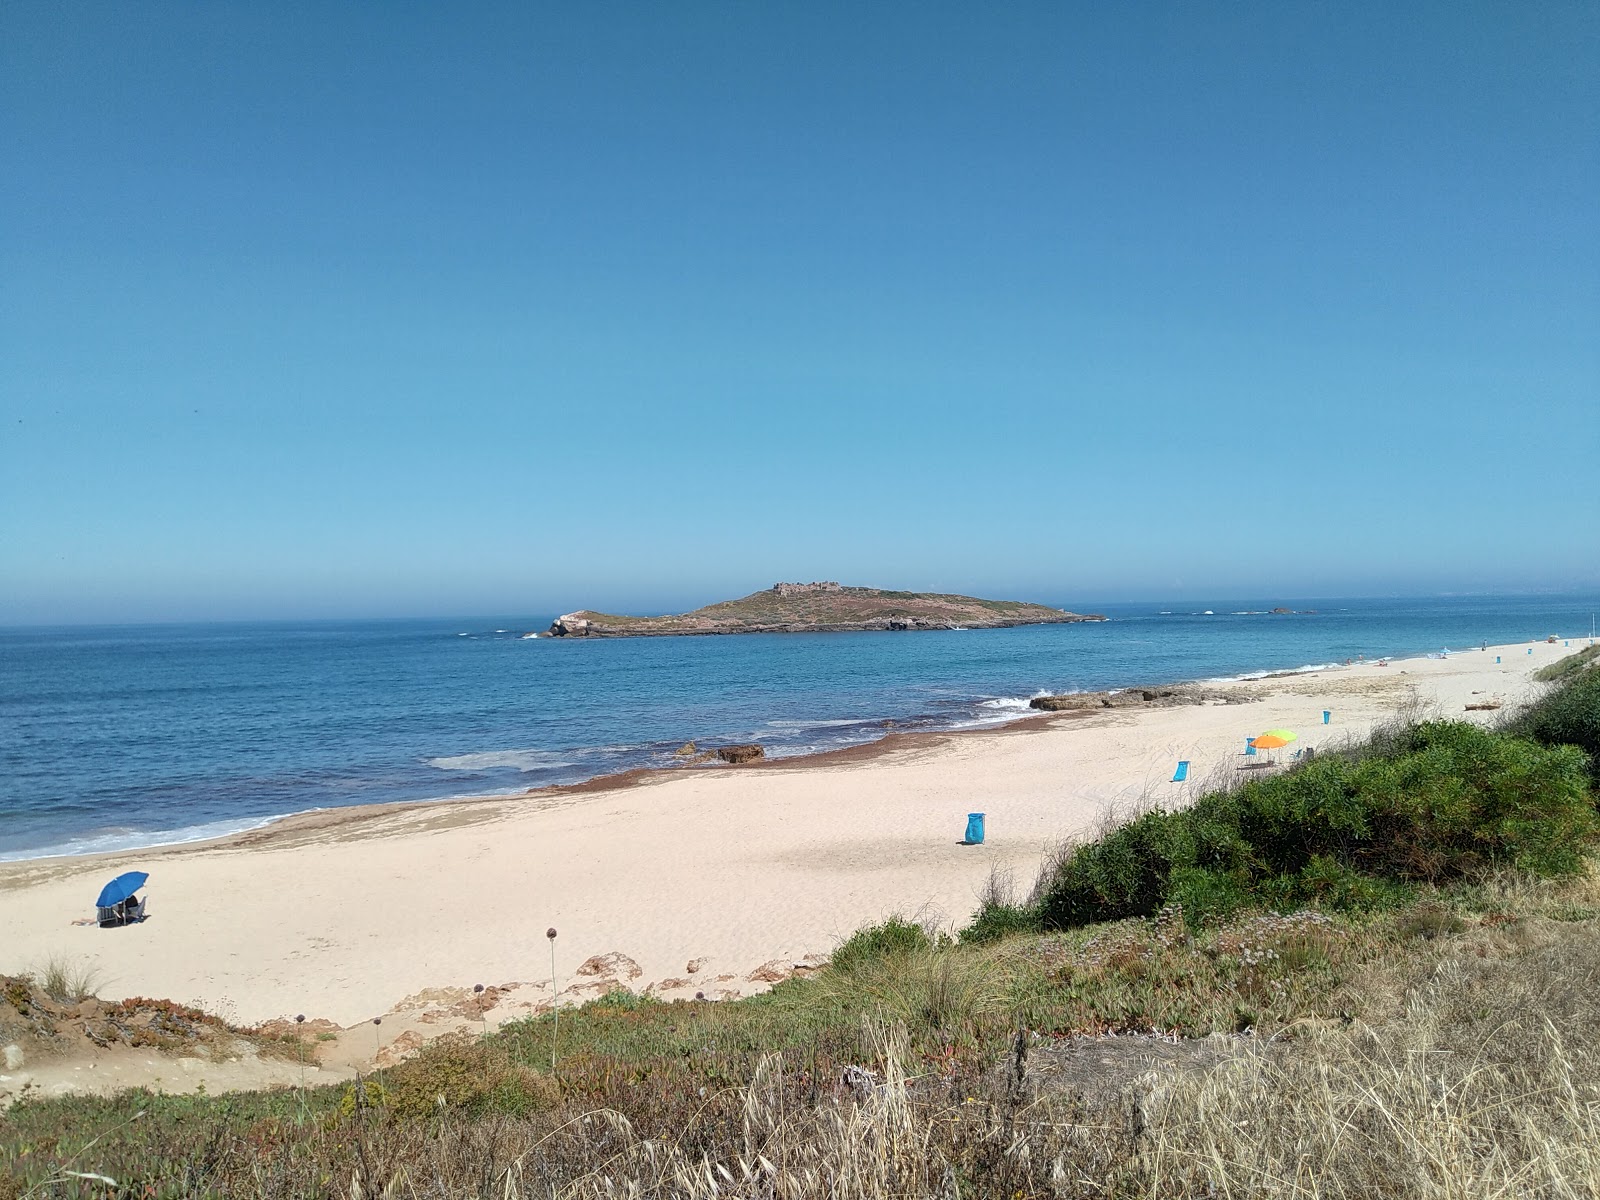 Foto de Pessegueiro Island Beach - lugar popular entre los conocedores del relax